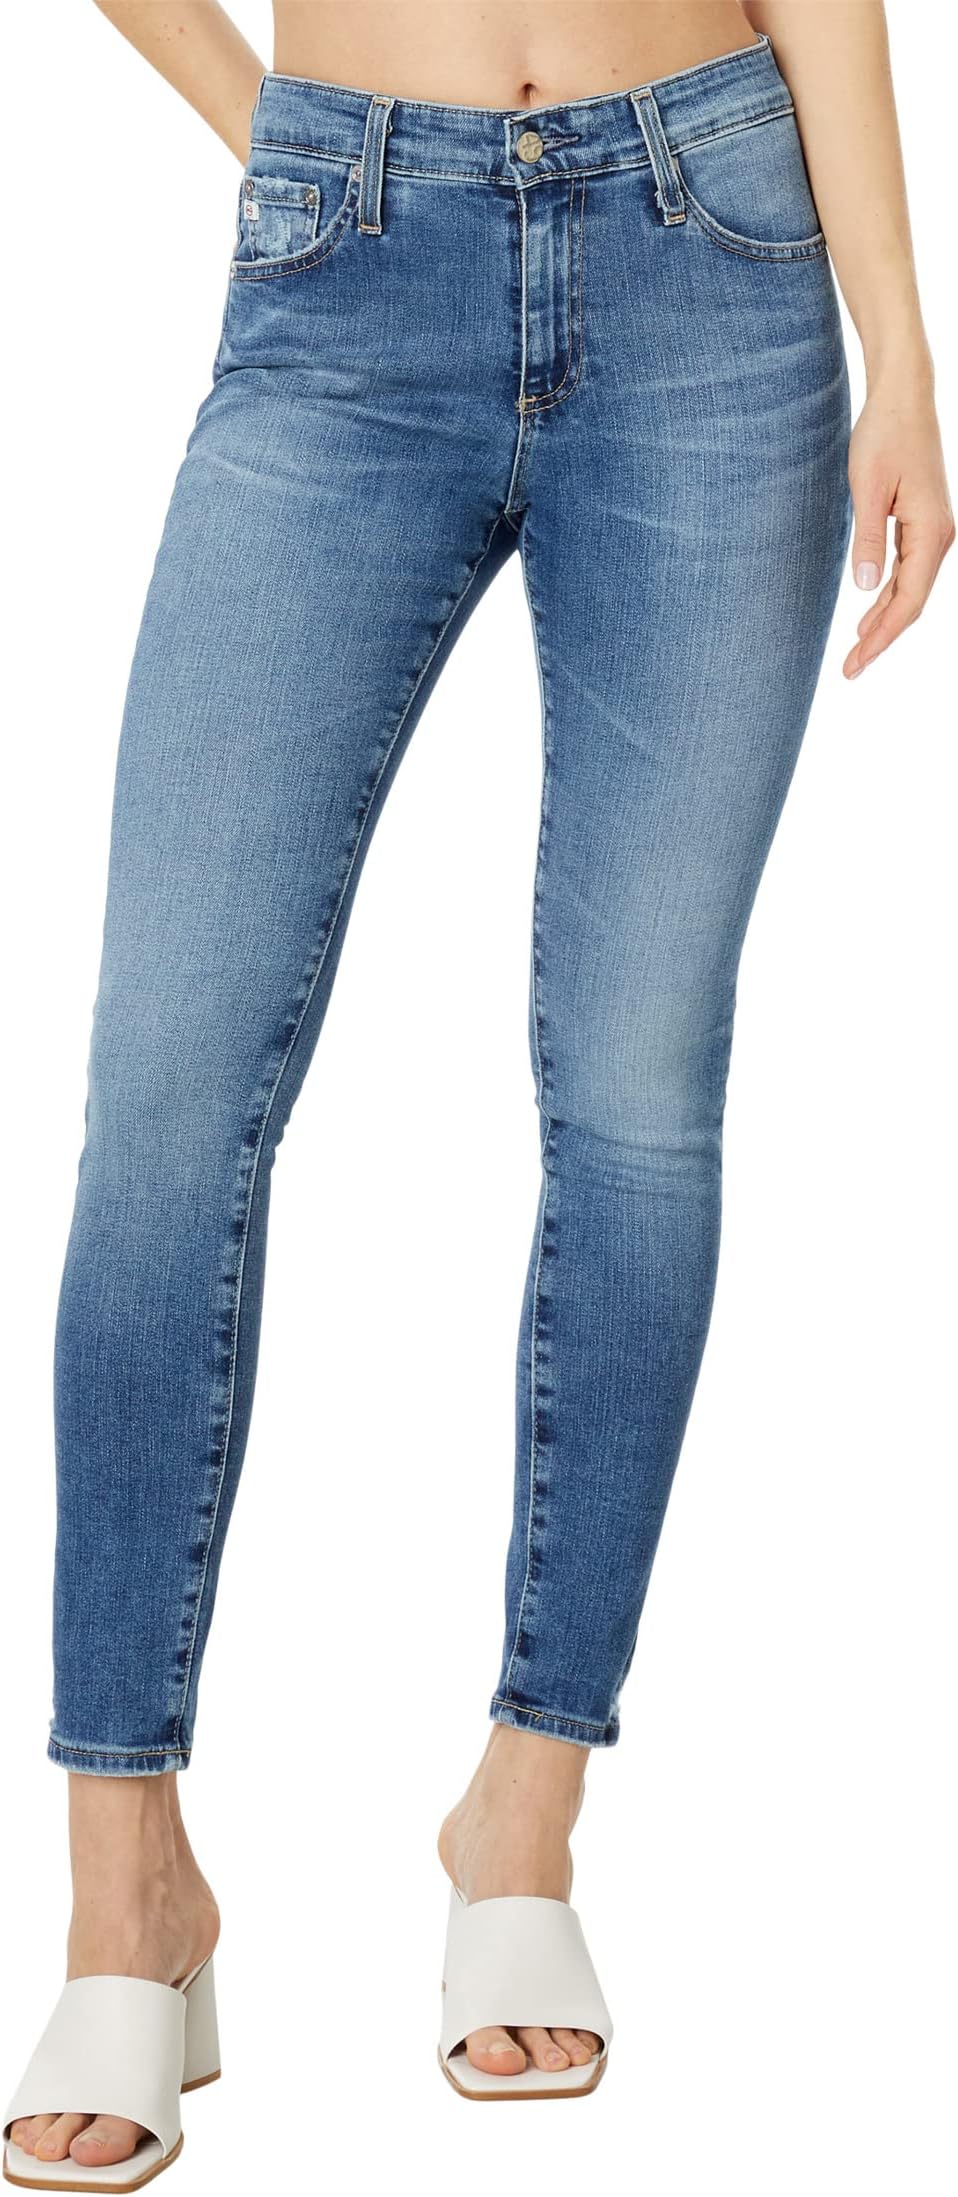 Джинсы Farrah Ankle in 14 Years Intentional AG Jeans, цвет 14 Years Intentional intentional integrity